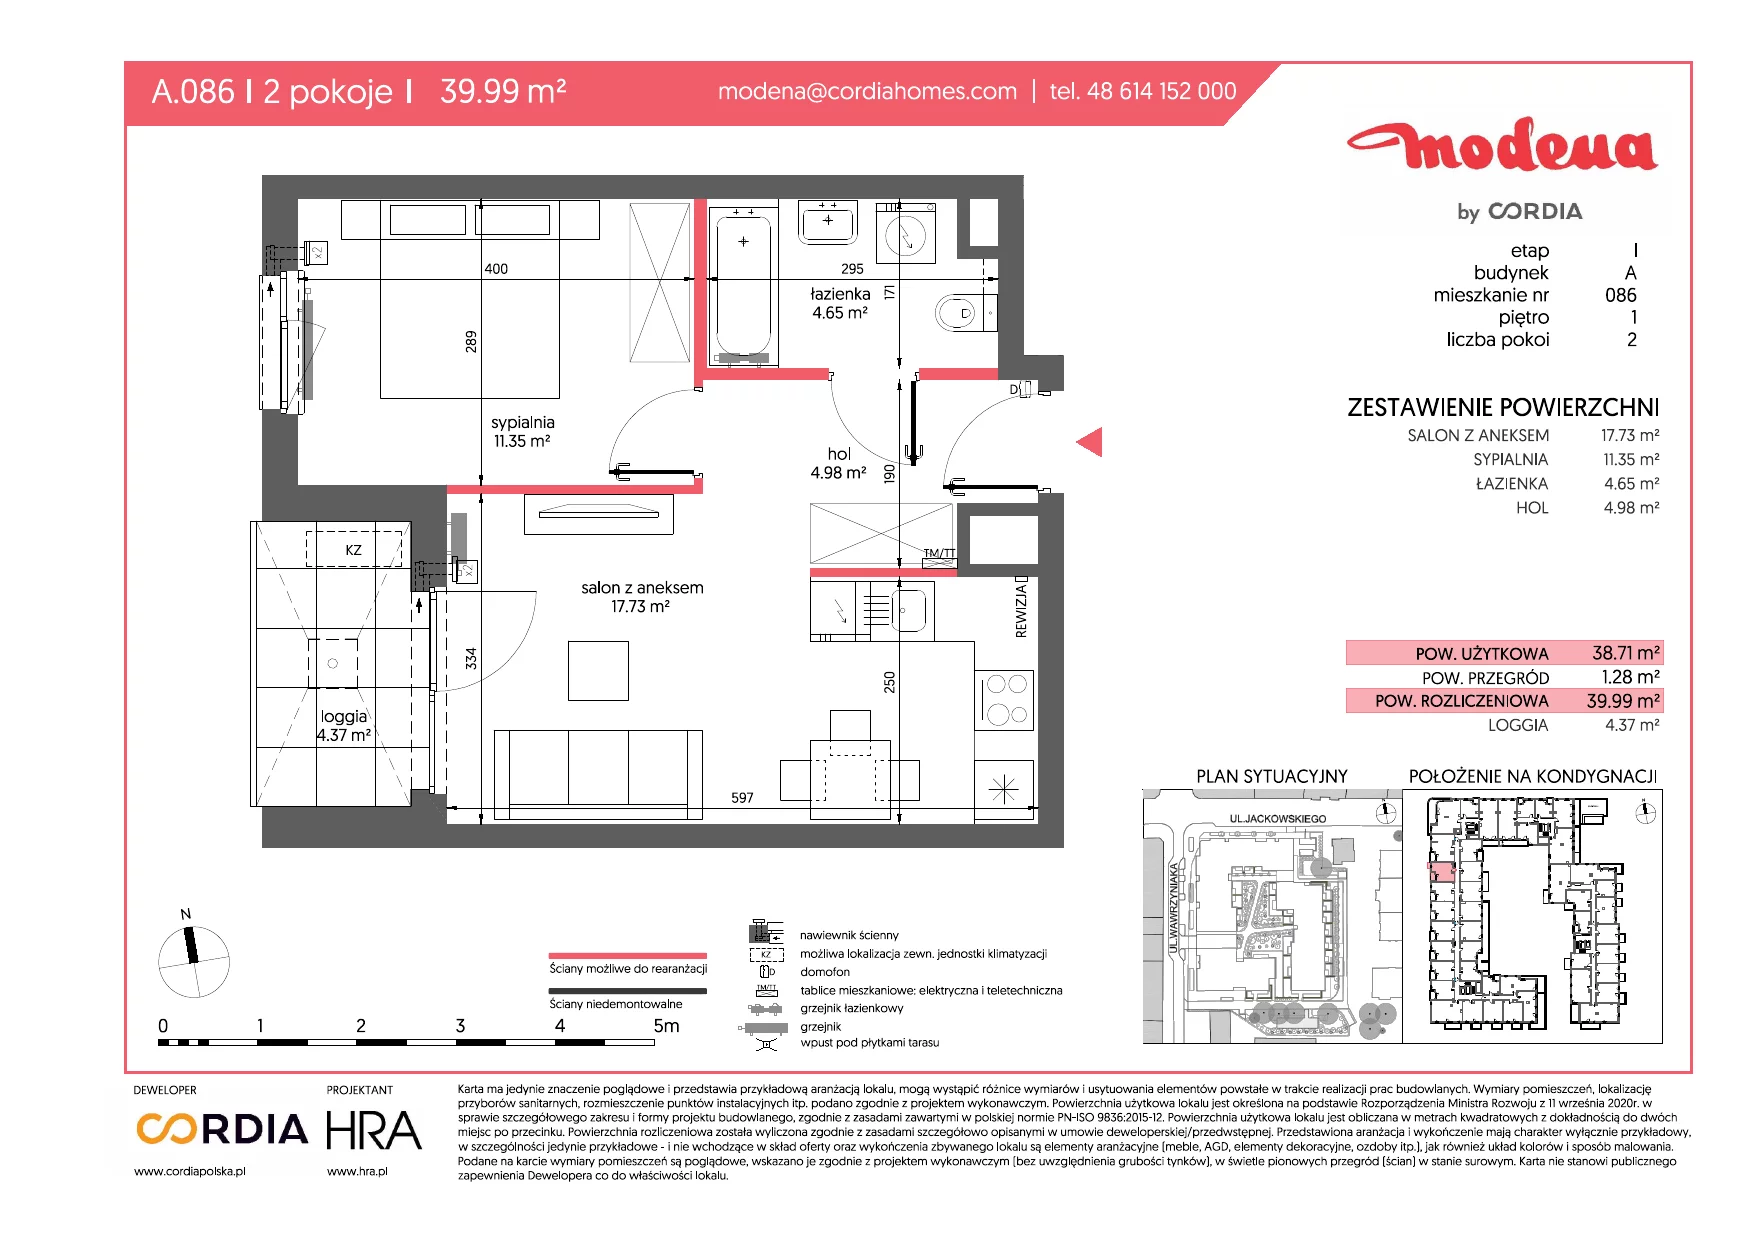 Mieszkanie 39,99 m², piętro 1, oferta nr A.086, Modena, Poznań, Jeżyce, Jeżyce, ul. Jackowskiego 24